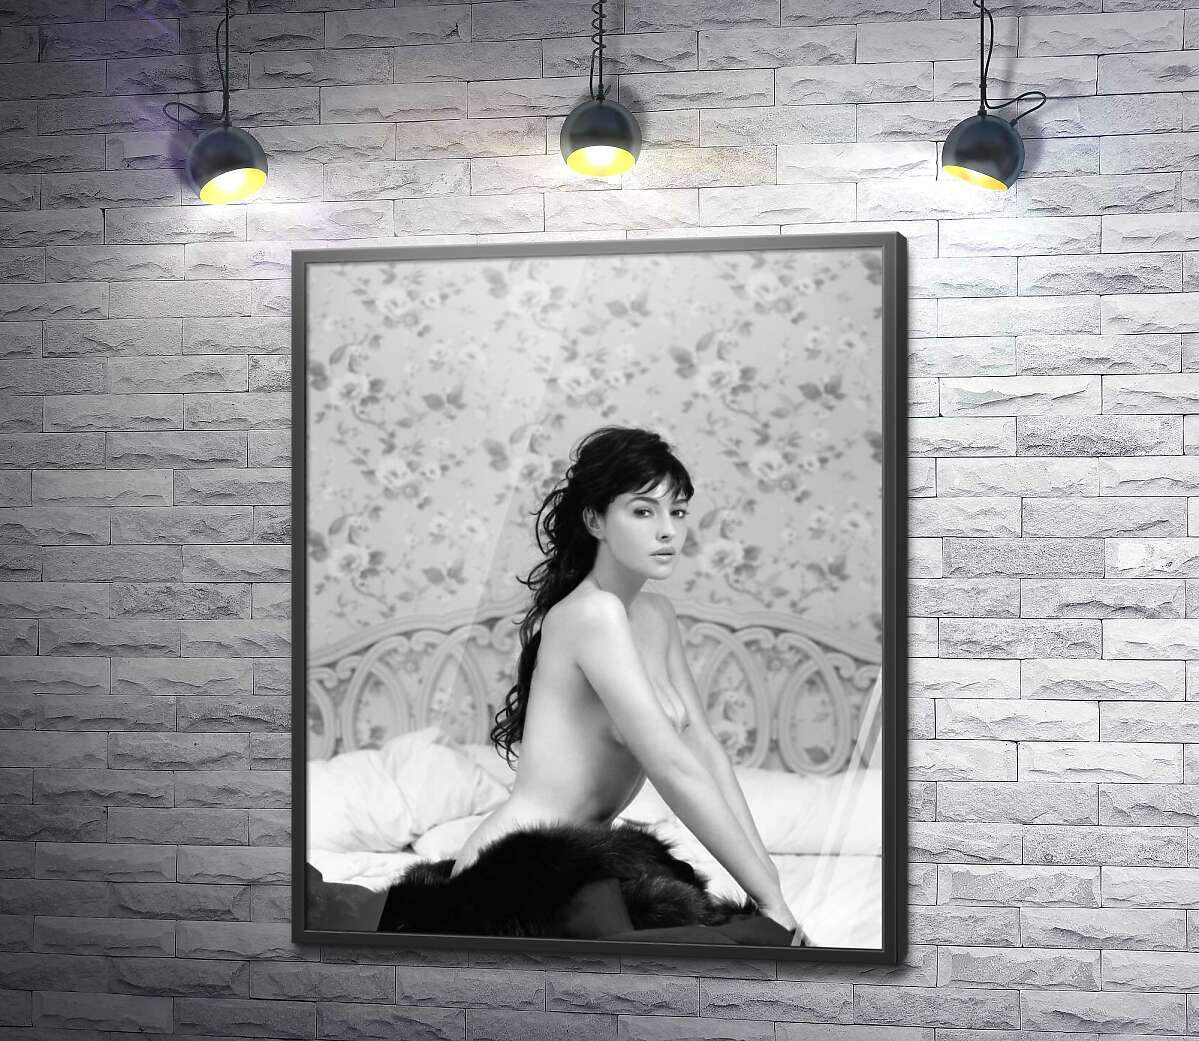 постер Моника Беллуччи (Monica Bellucci) эротично позирует в постели